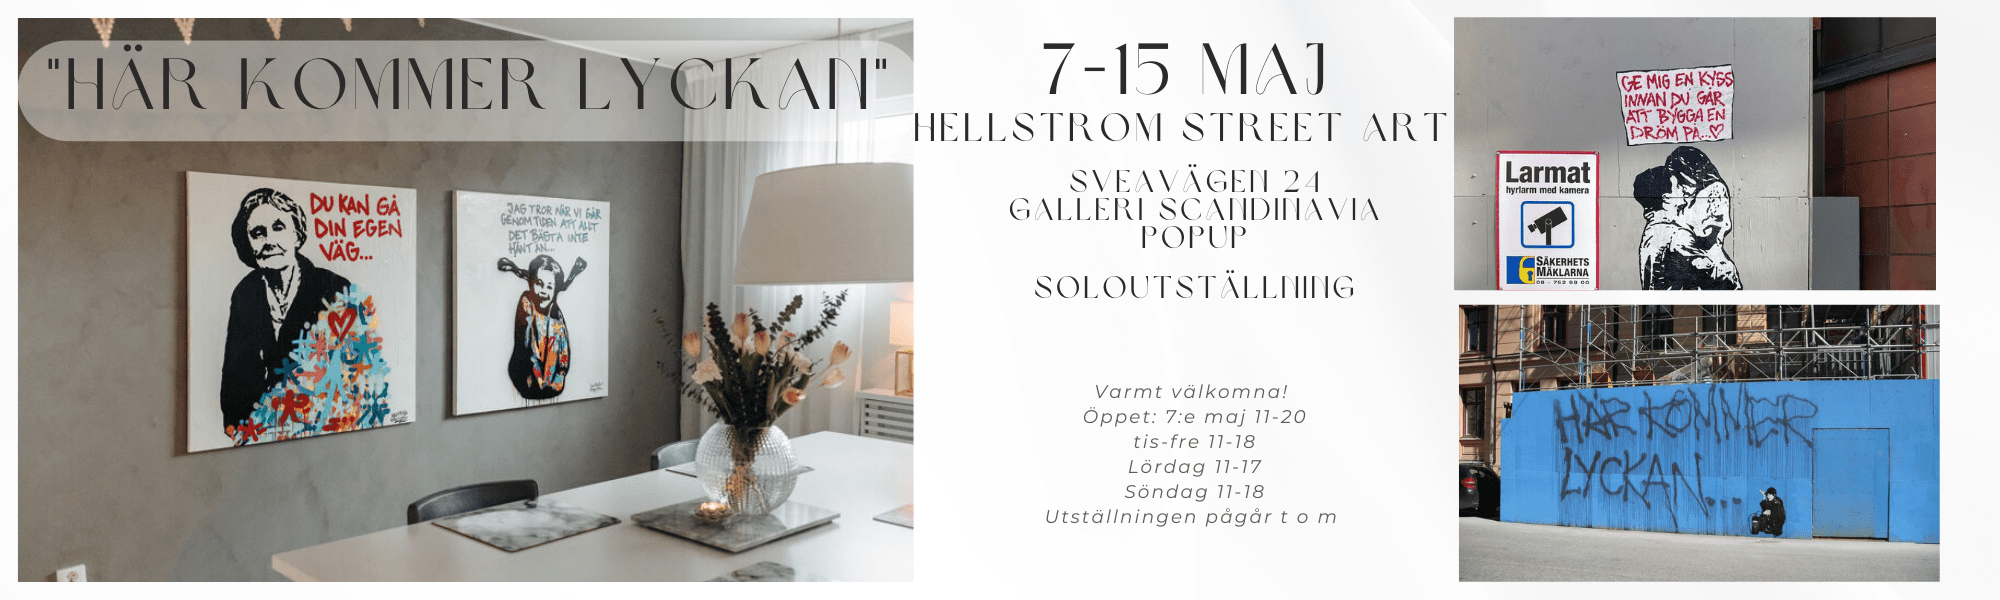 Här kommer Lyckan - Hellstrom Street Art - Galleri Scandinavia